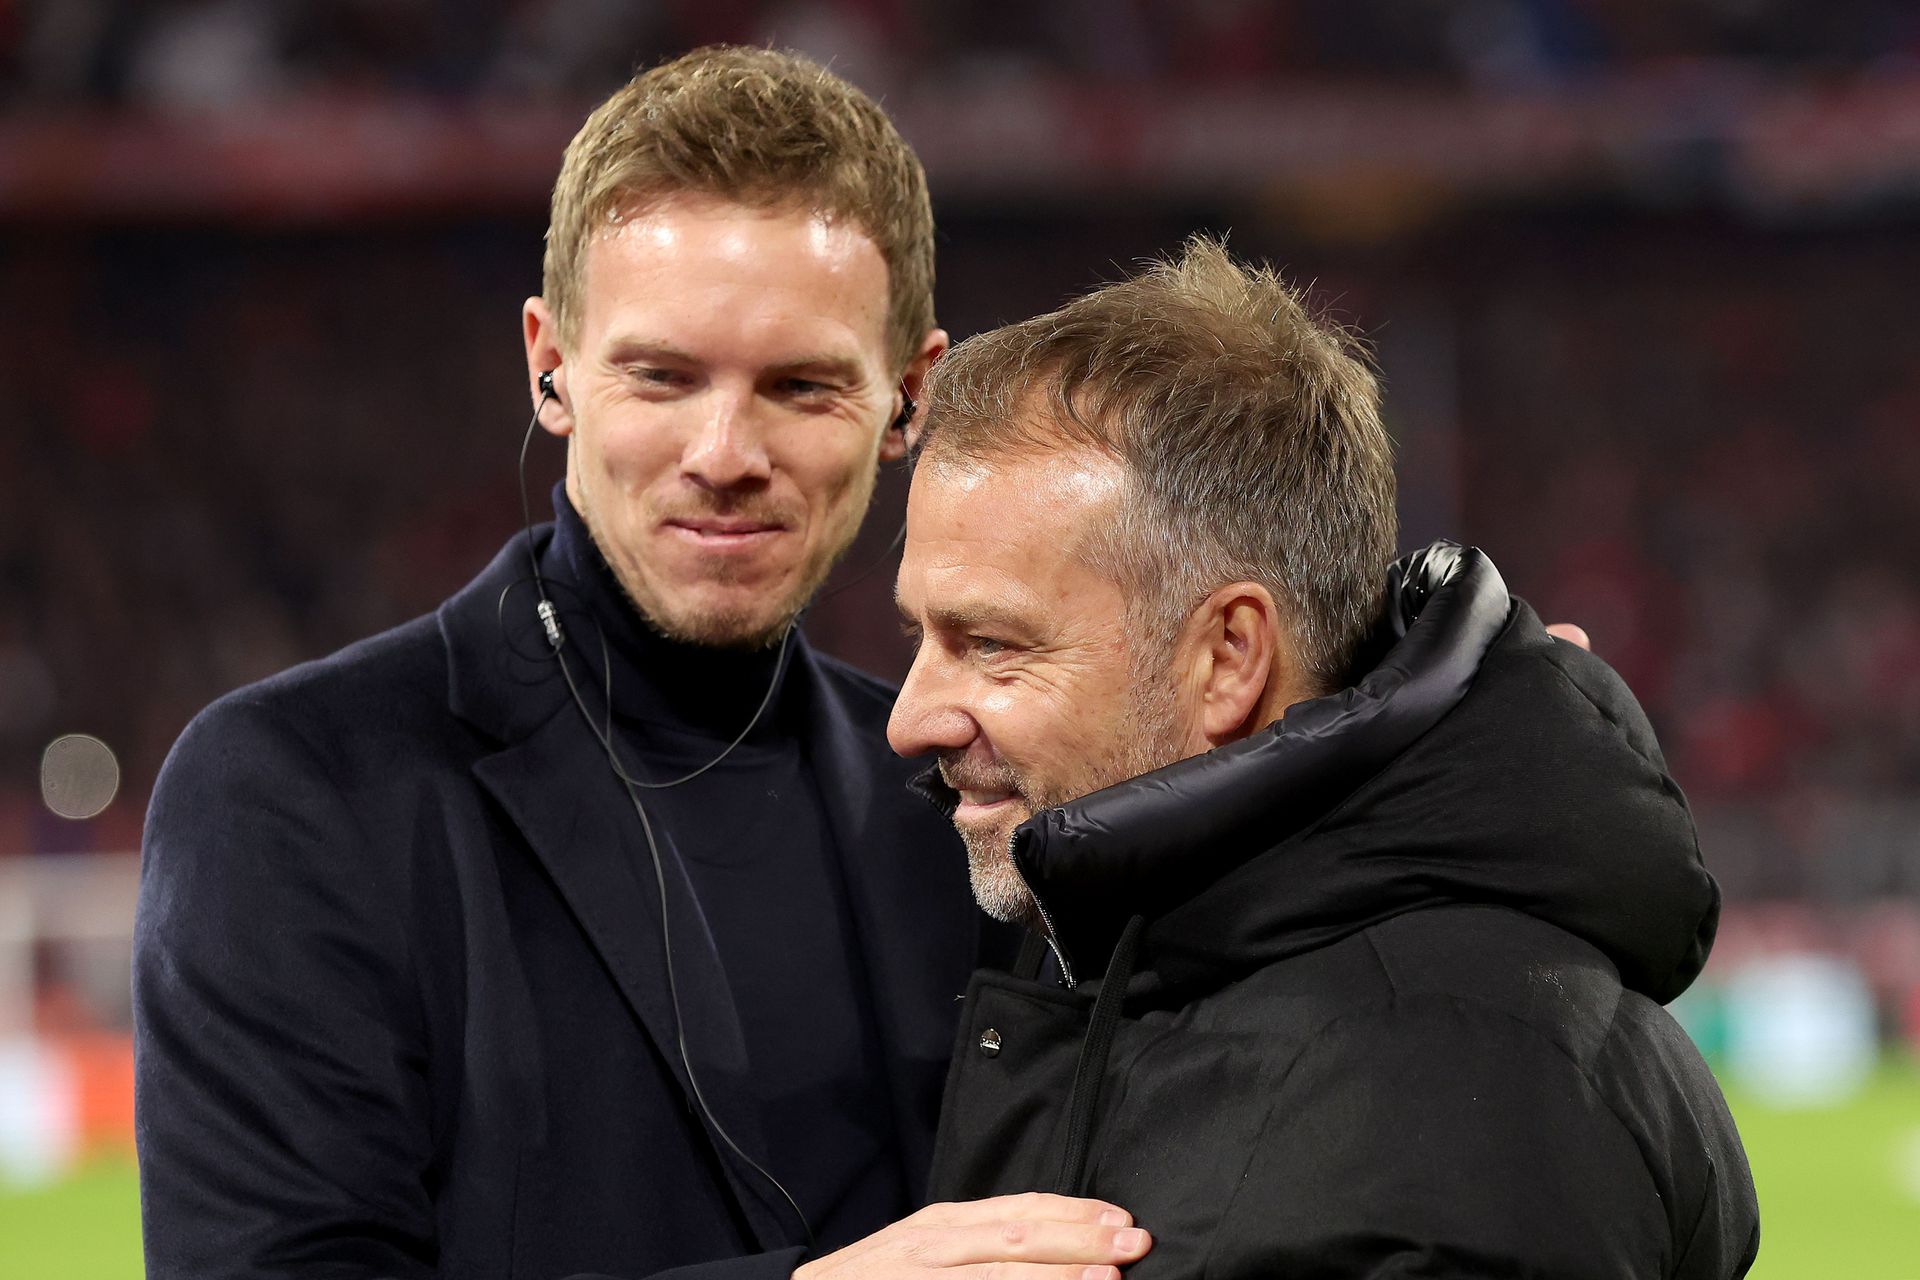 Nagelsmann és Flick még márciusban, később az egyiket a Bayern Münchentől, a másikat a válogatottól távolították el. Mától már csak az egyikük munkanélküli... (Fotó: Getty Images)